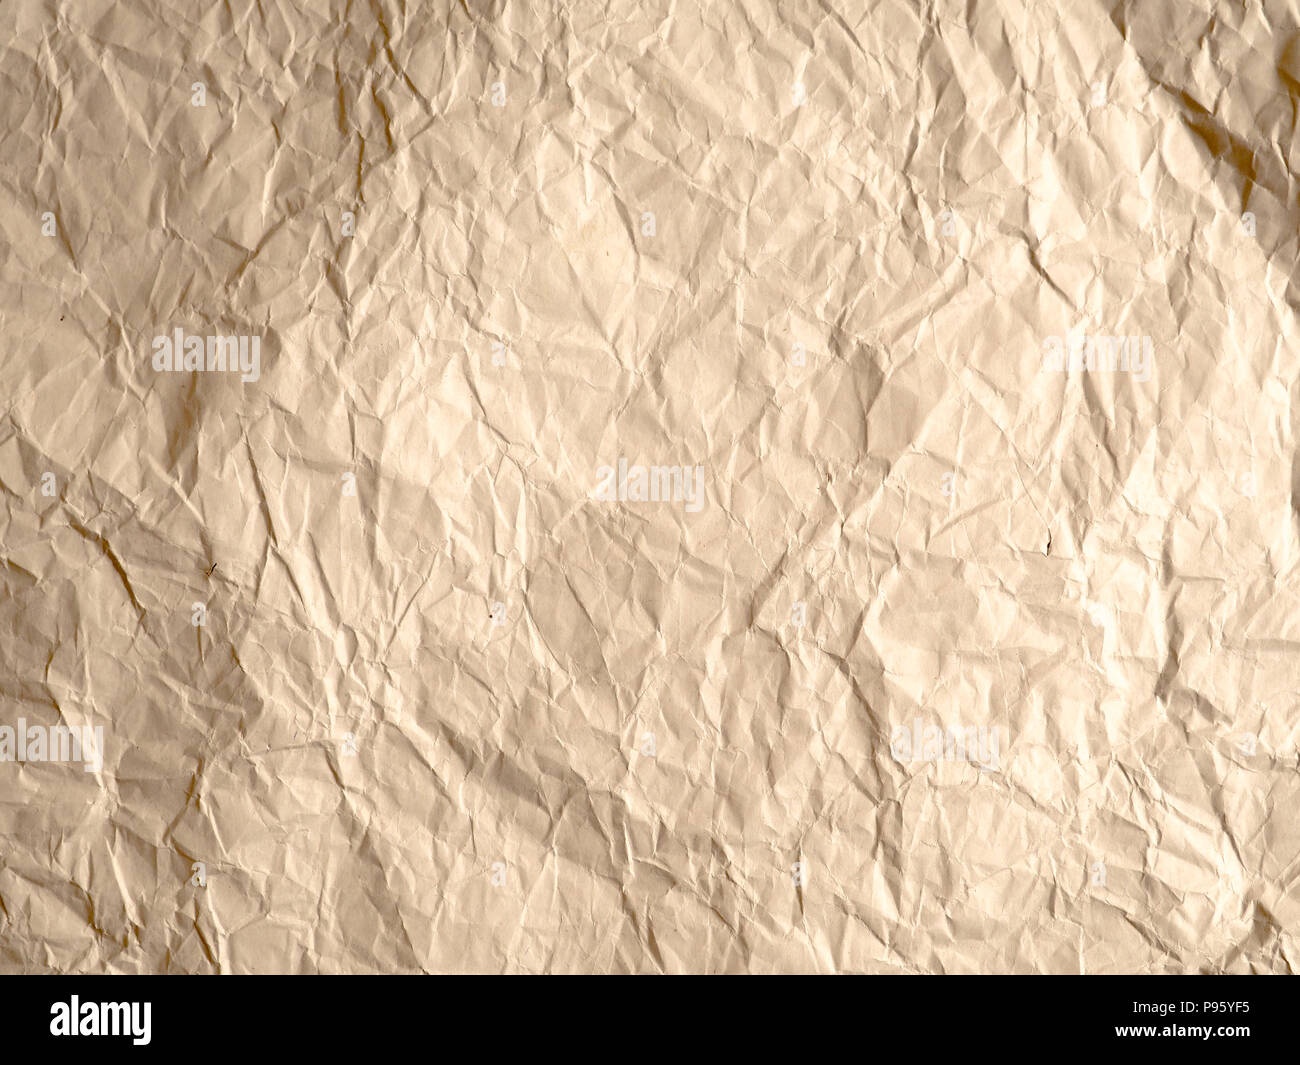 Papier froissé blanc texture background, brown recycler papier froissé pour le fond : pli de brown paper textures différentes pour la conception,decorativ Banque D'Images